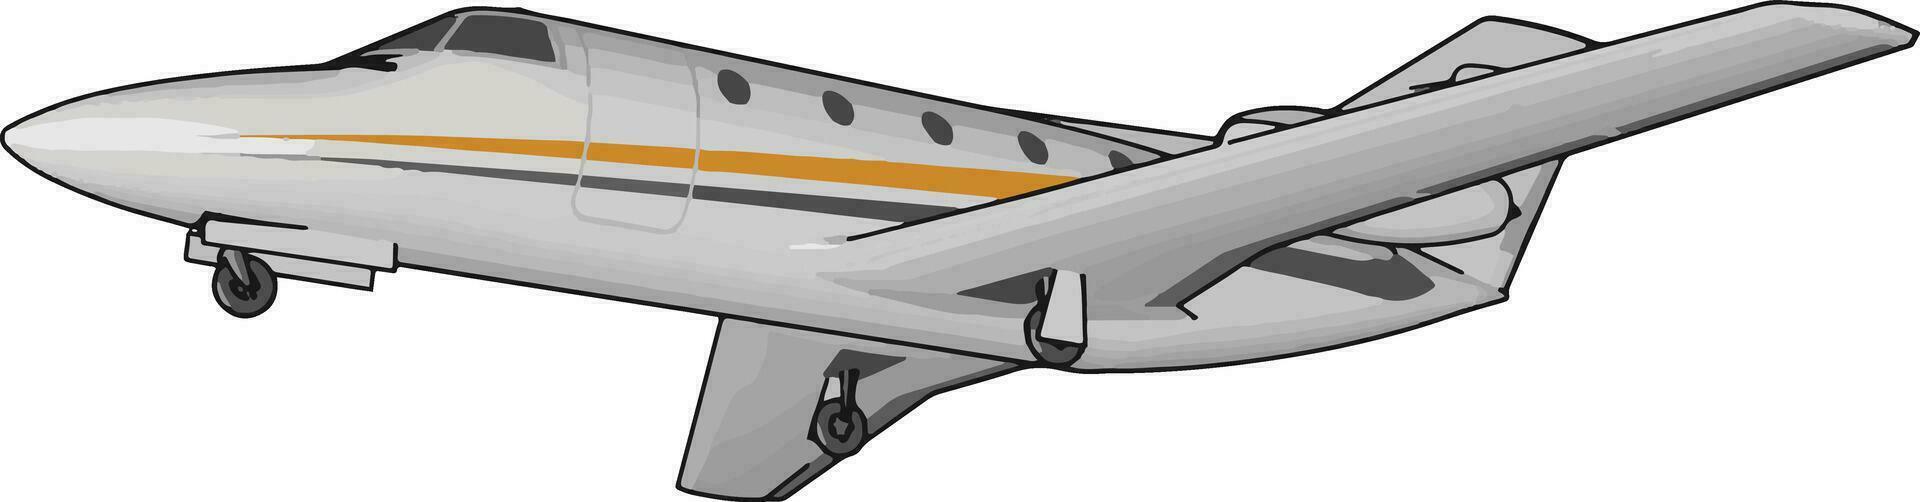 Aeropane verbreitet Formen von Transport Vektor oder Farbe Illustration